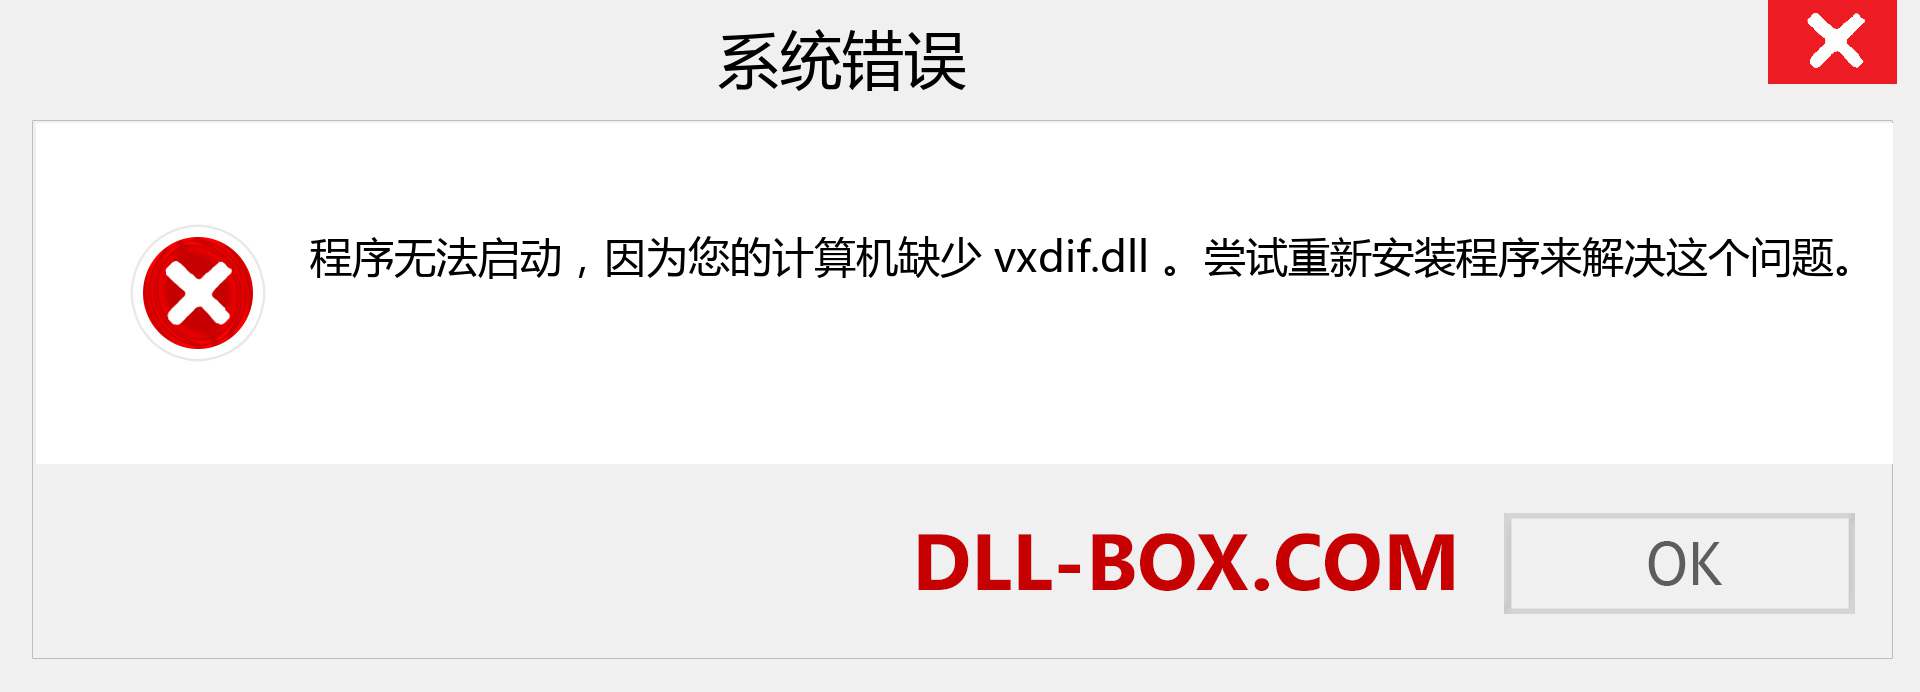 vxdif.dll 文件丢失？。 适用于 Windows 7、8、10 的下载 - 修复 Windows、照片、图像上的 vxdif dll 丢失错误